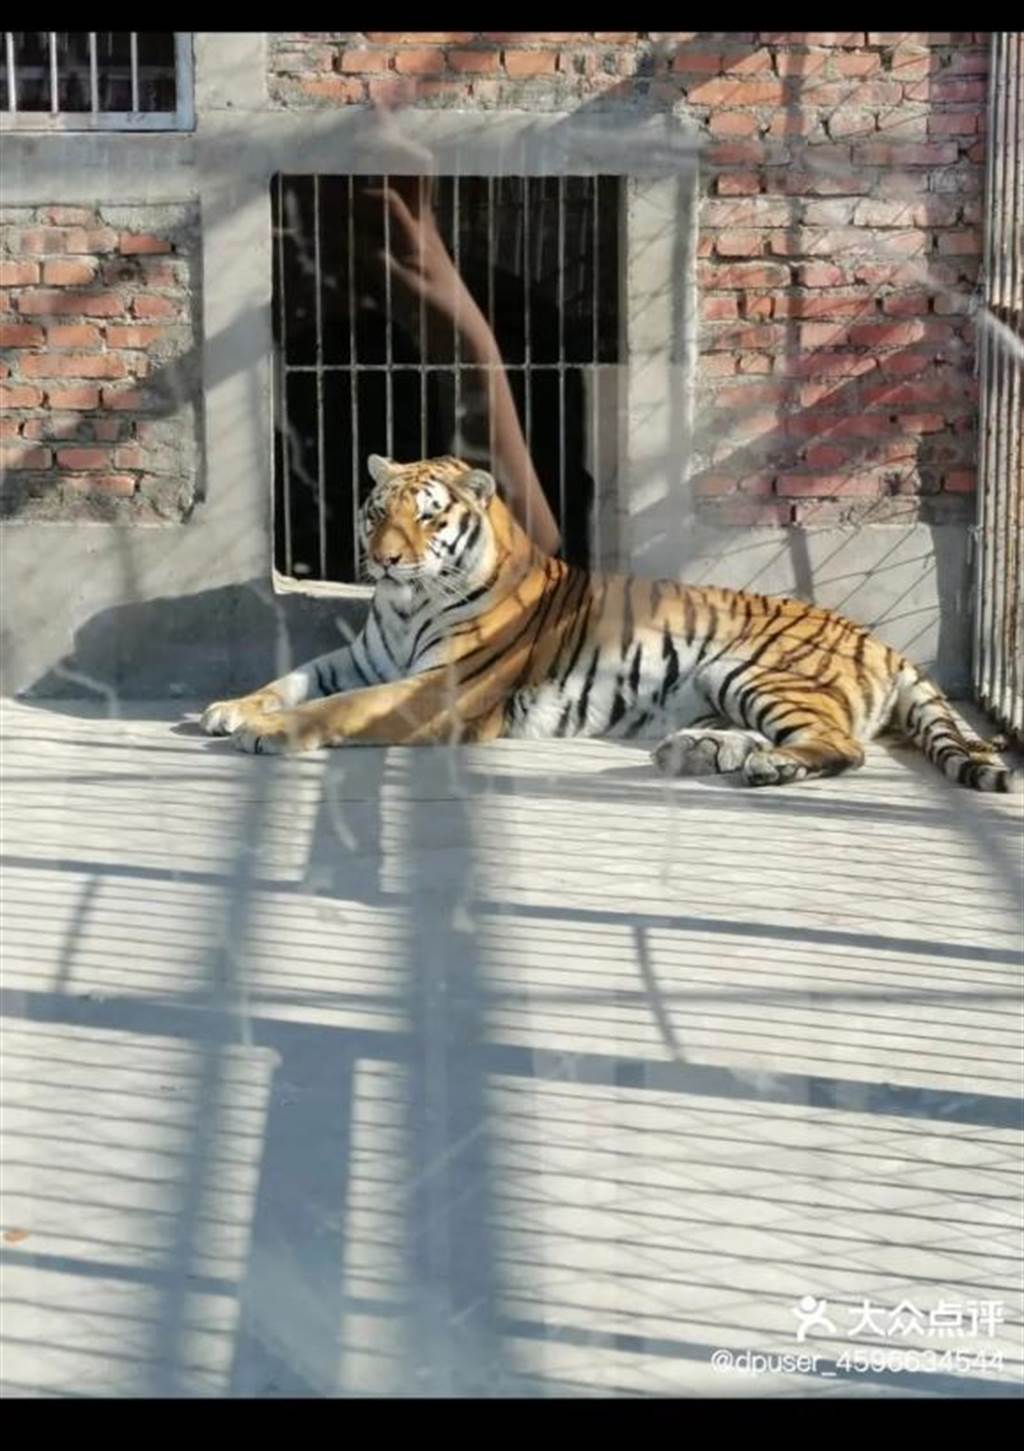 意大利一名馴獸師被四隻老虎襲擊致死 | Now 新聞